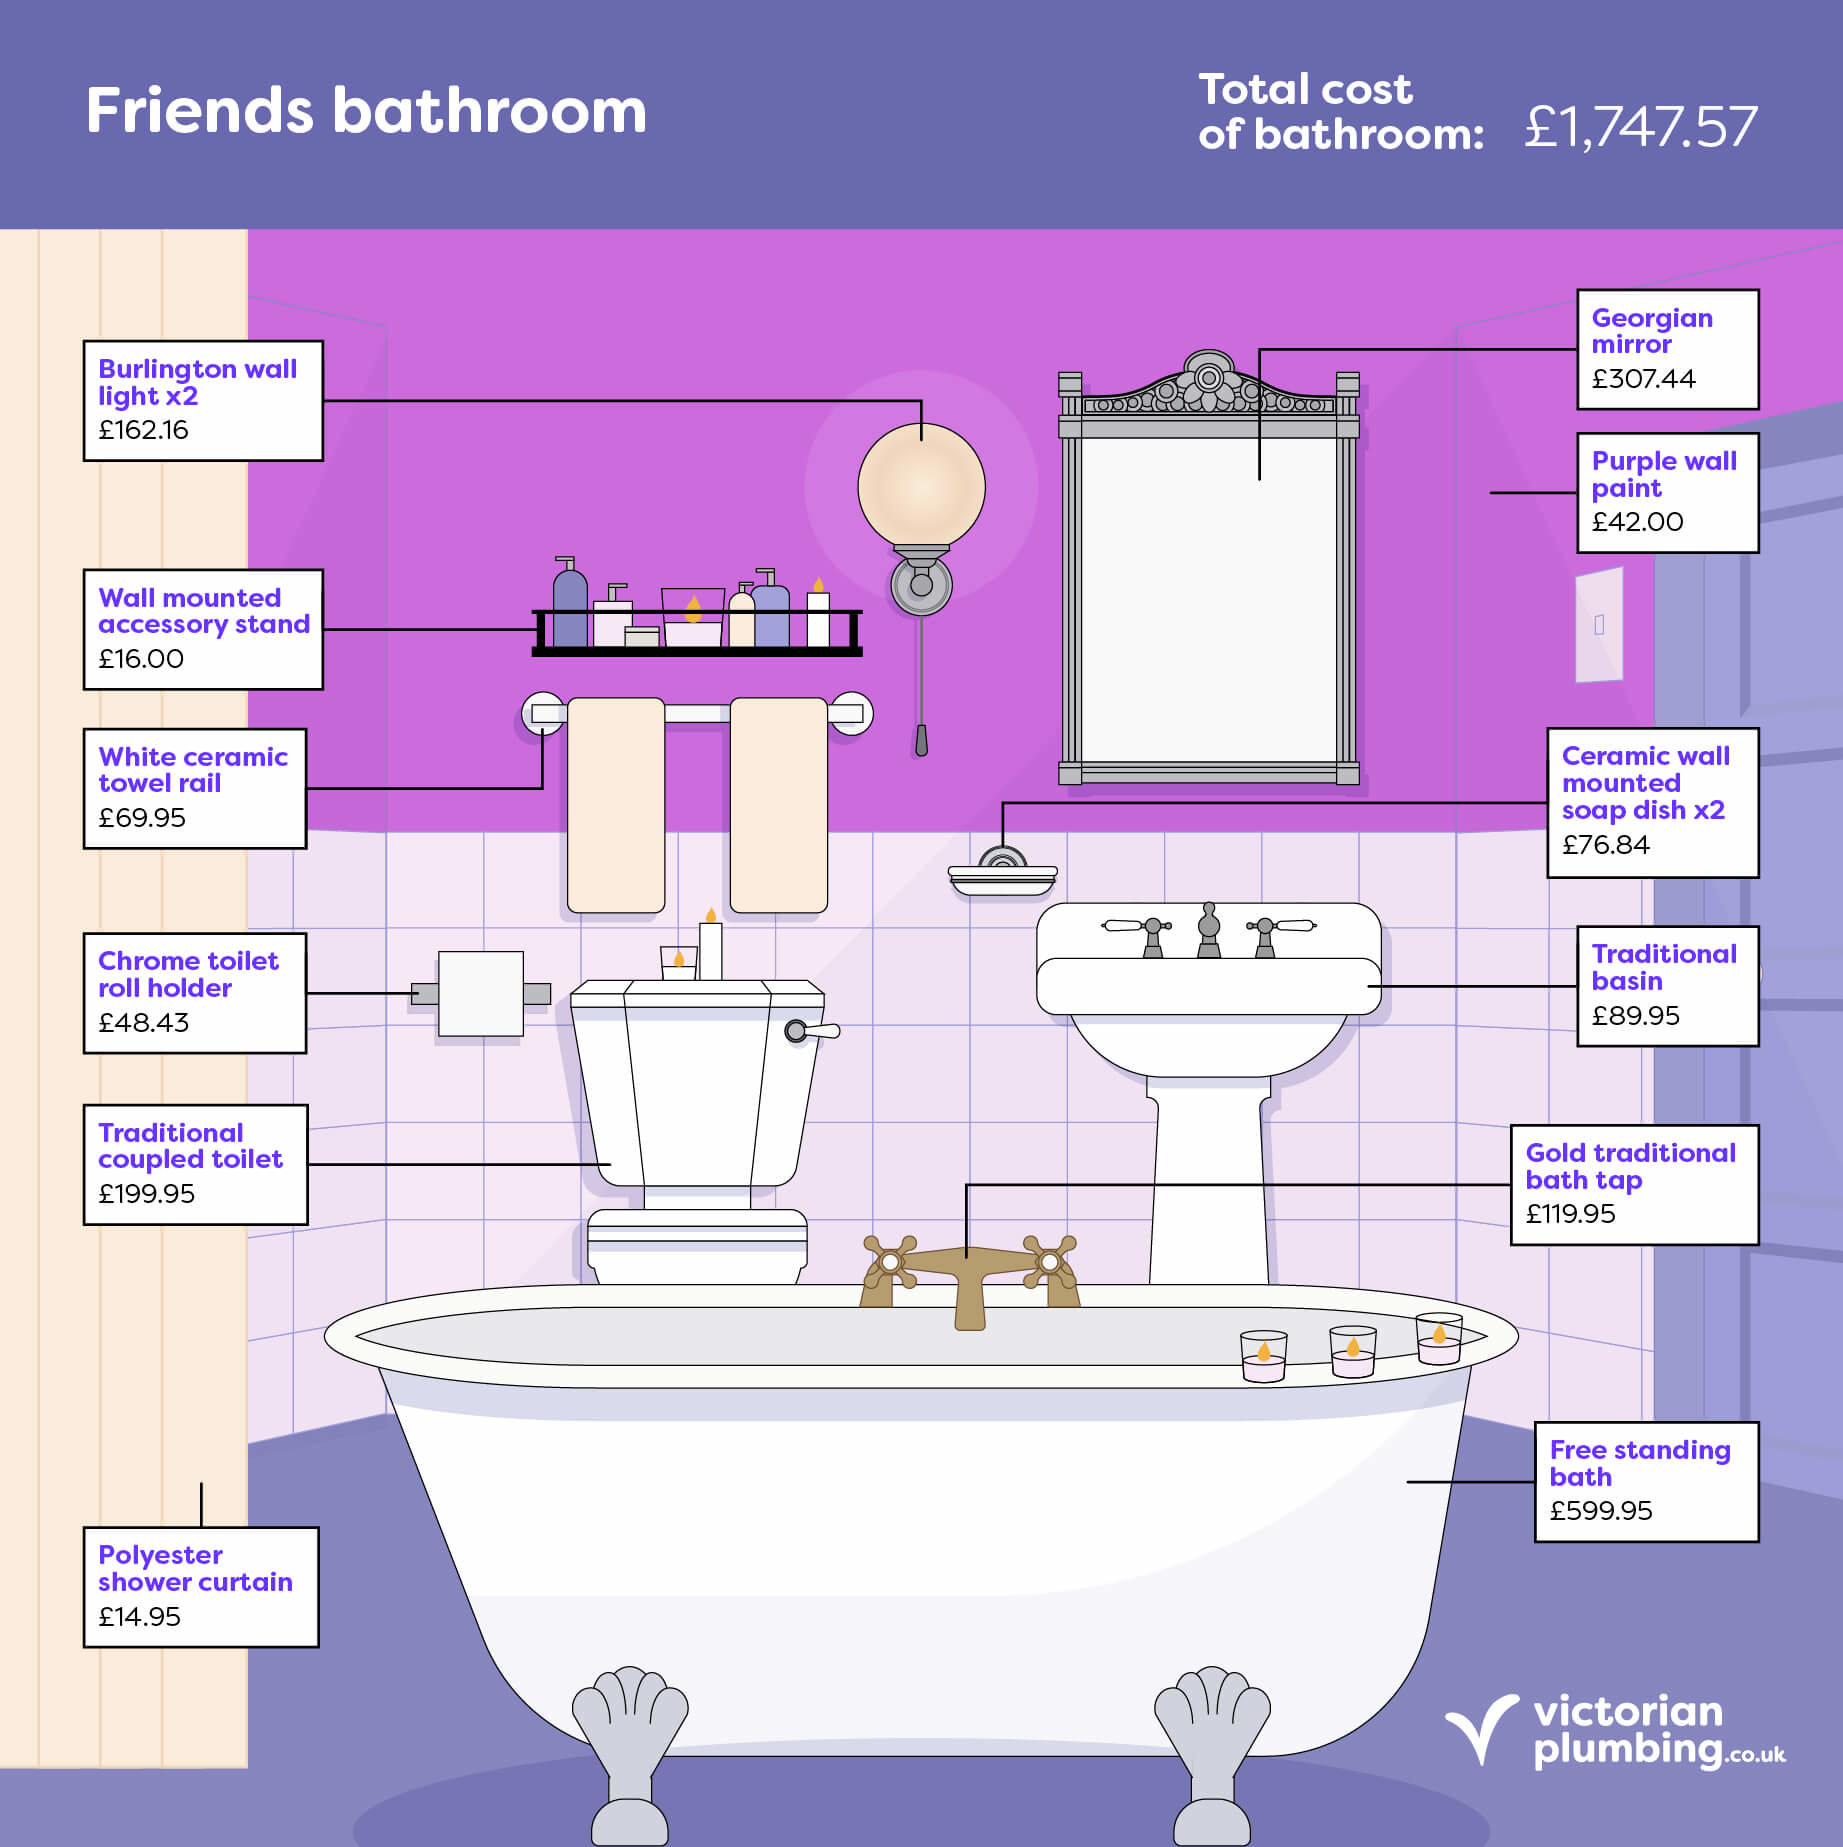 Fictional Bathrooms: Friends